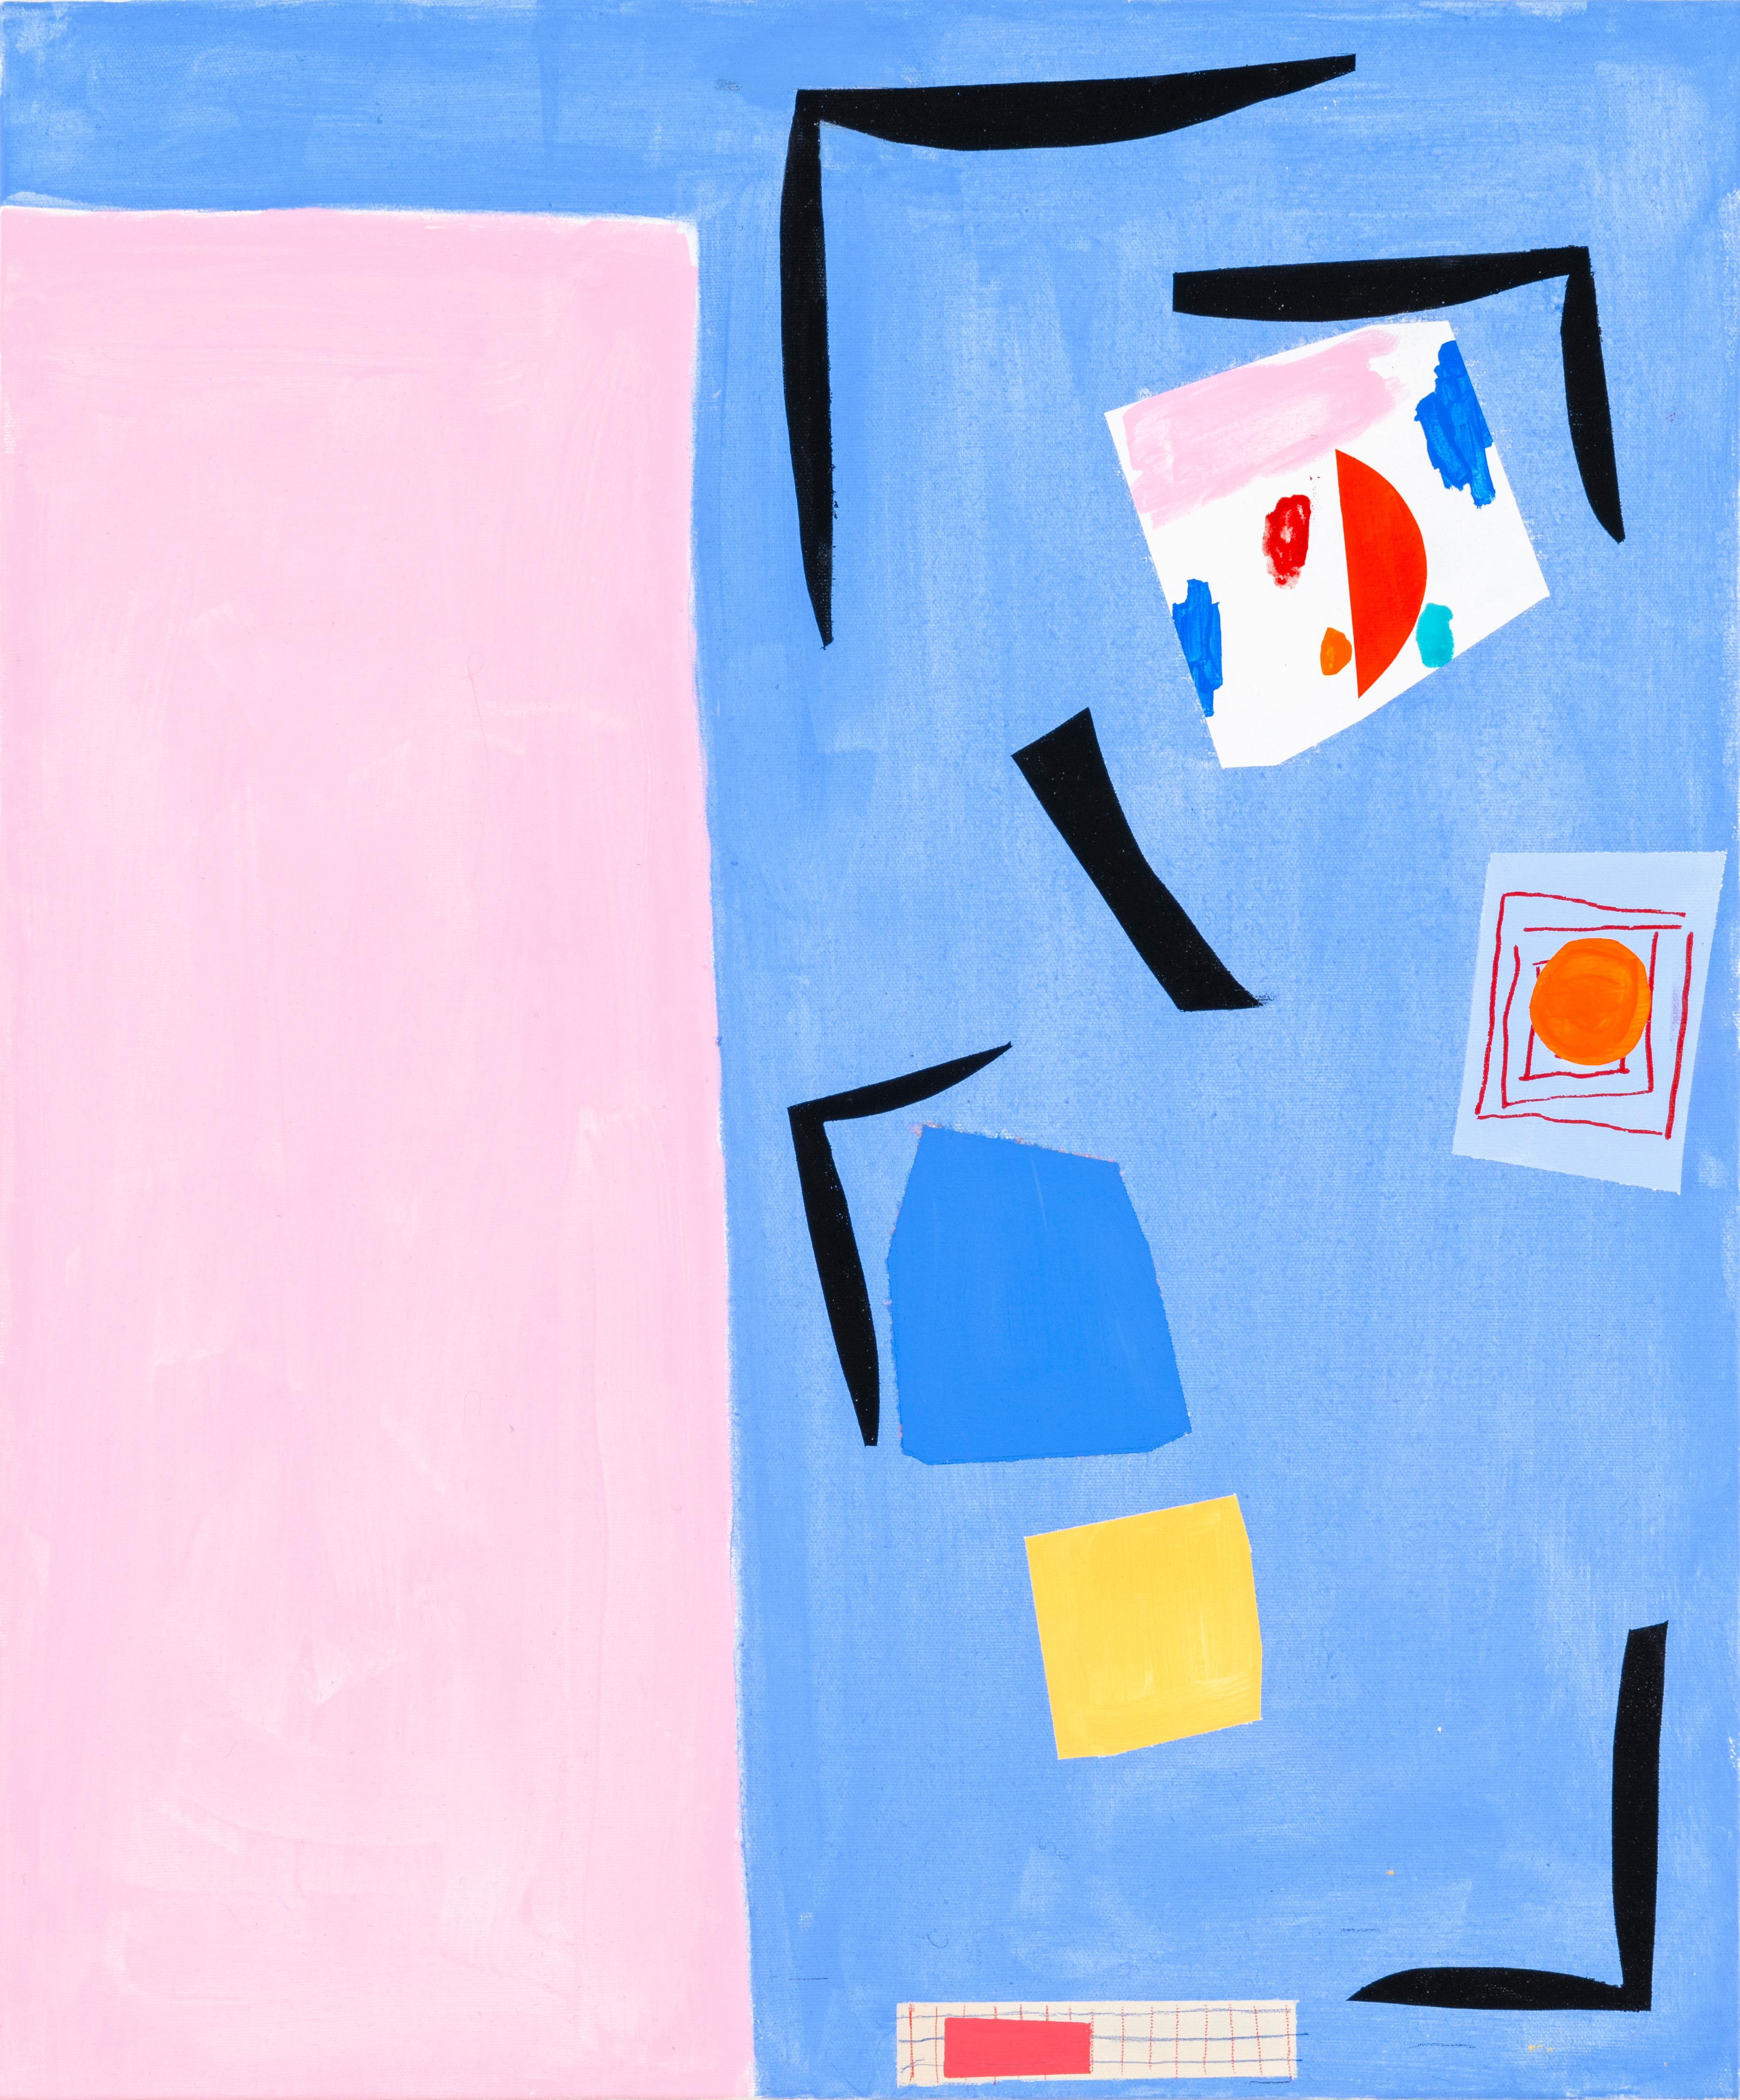 Abstract Painting Margo Margolis - "Studio" Abstraction ludique à la Matisse Bleu, rose, rouge, jaune, noir, blanc